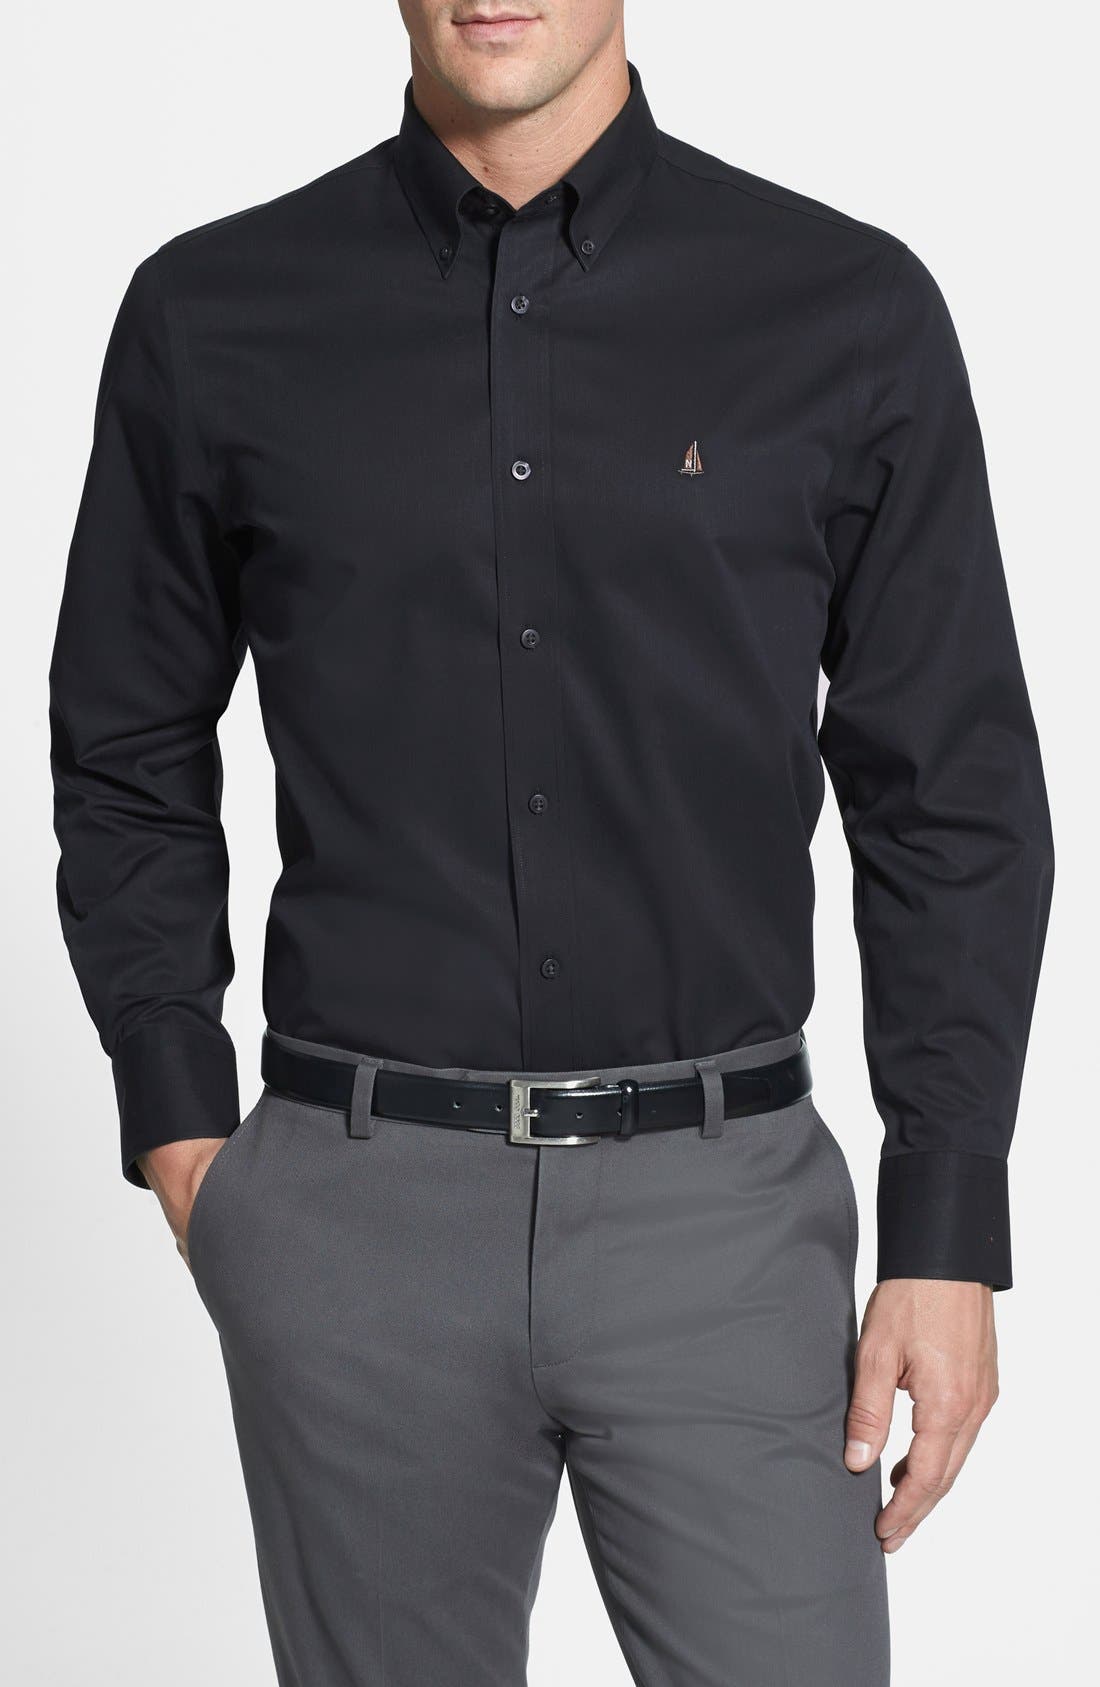 black button up shirt